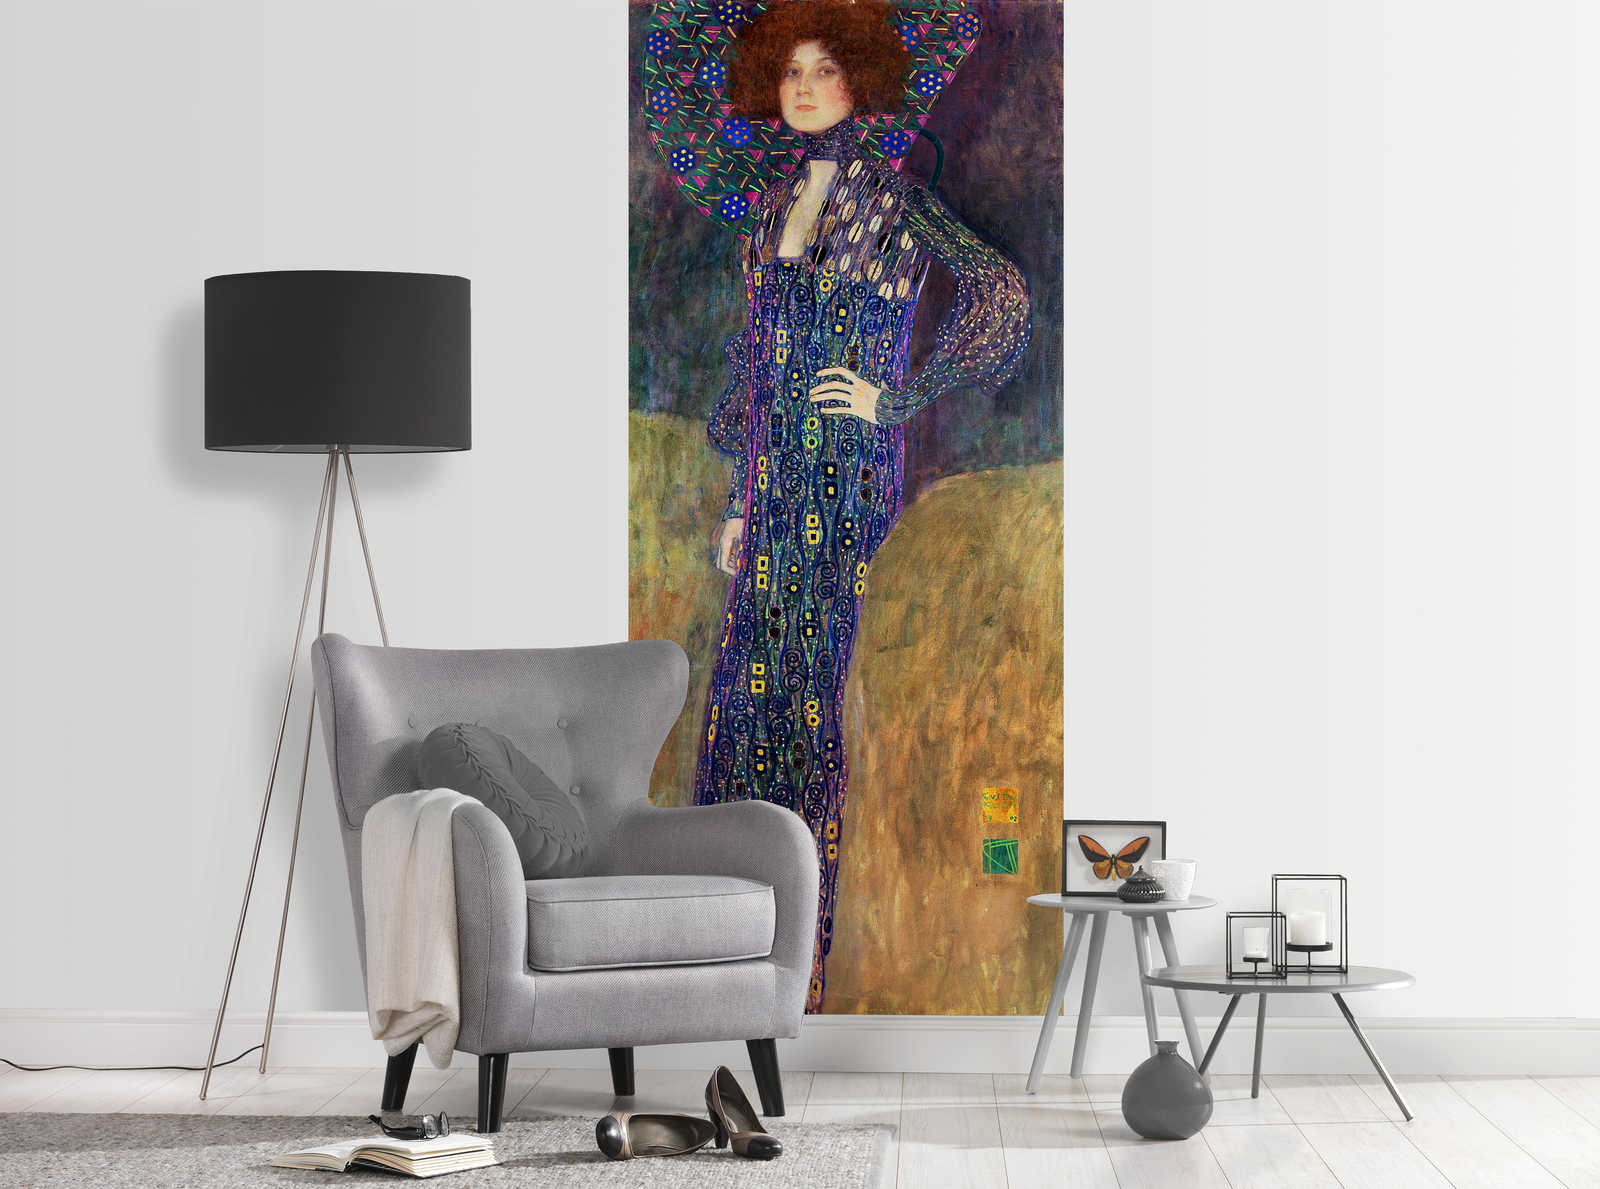             Fotomurali "Emilie Floege" di Gustav Klimt
        